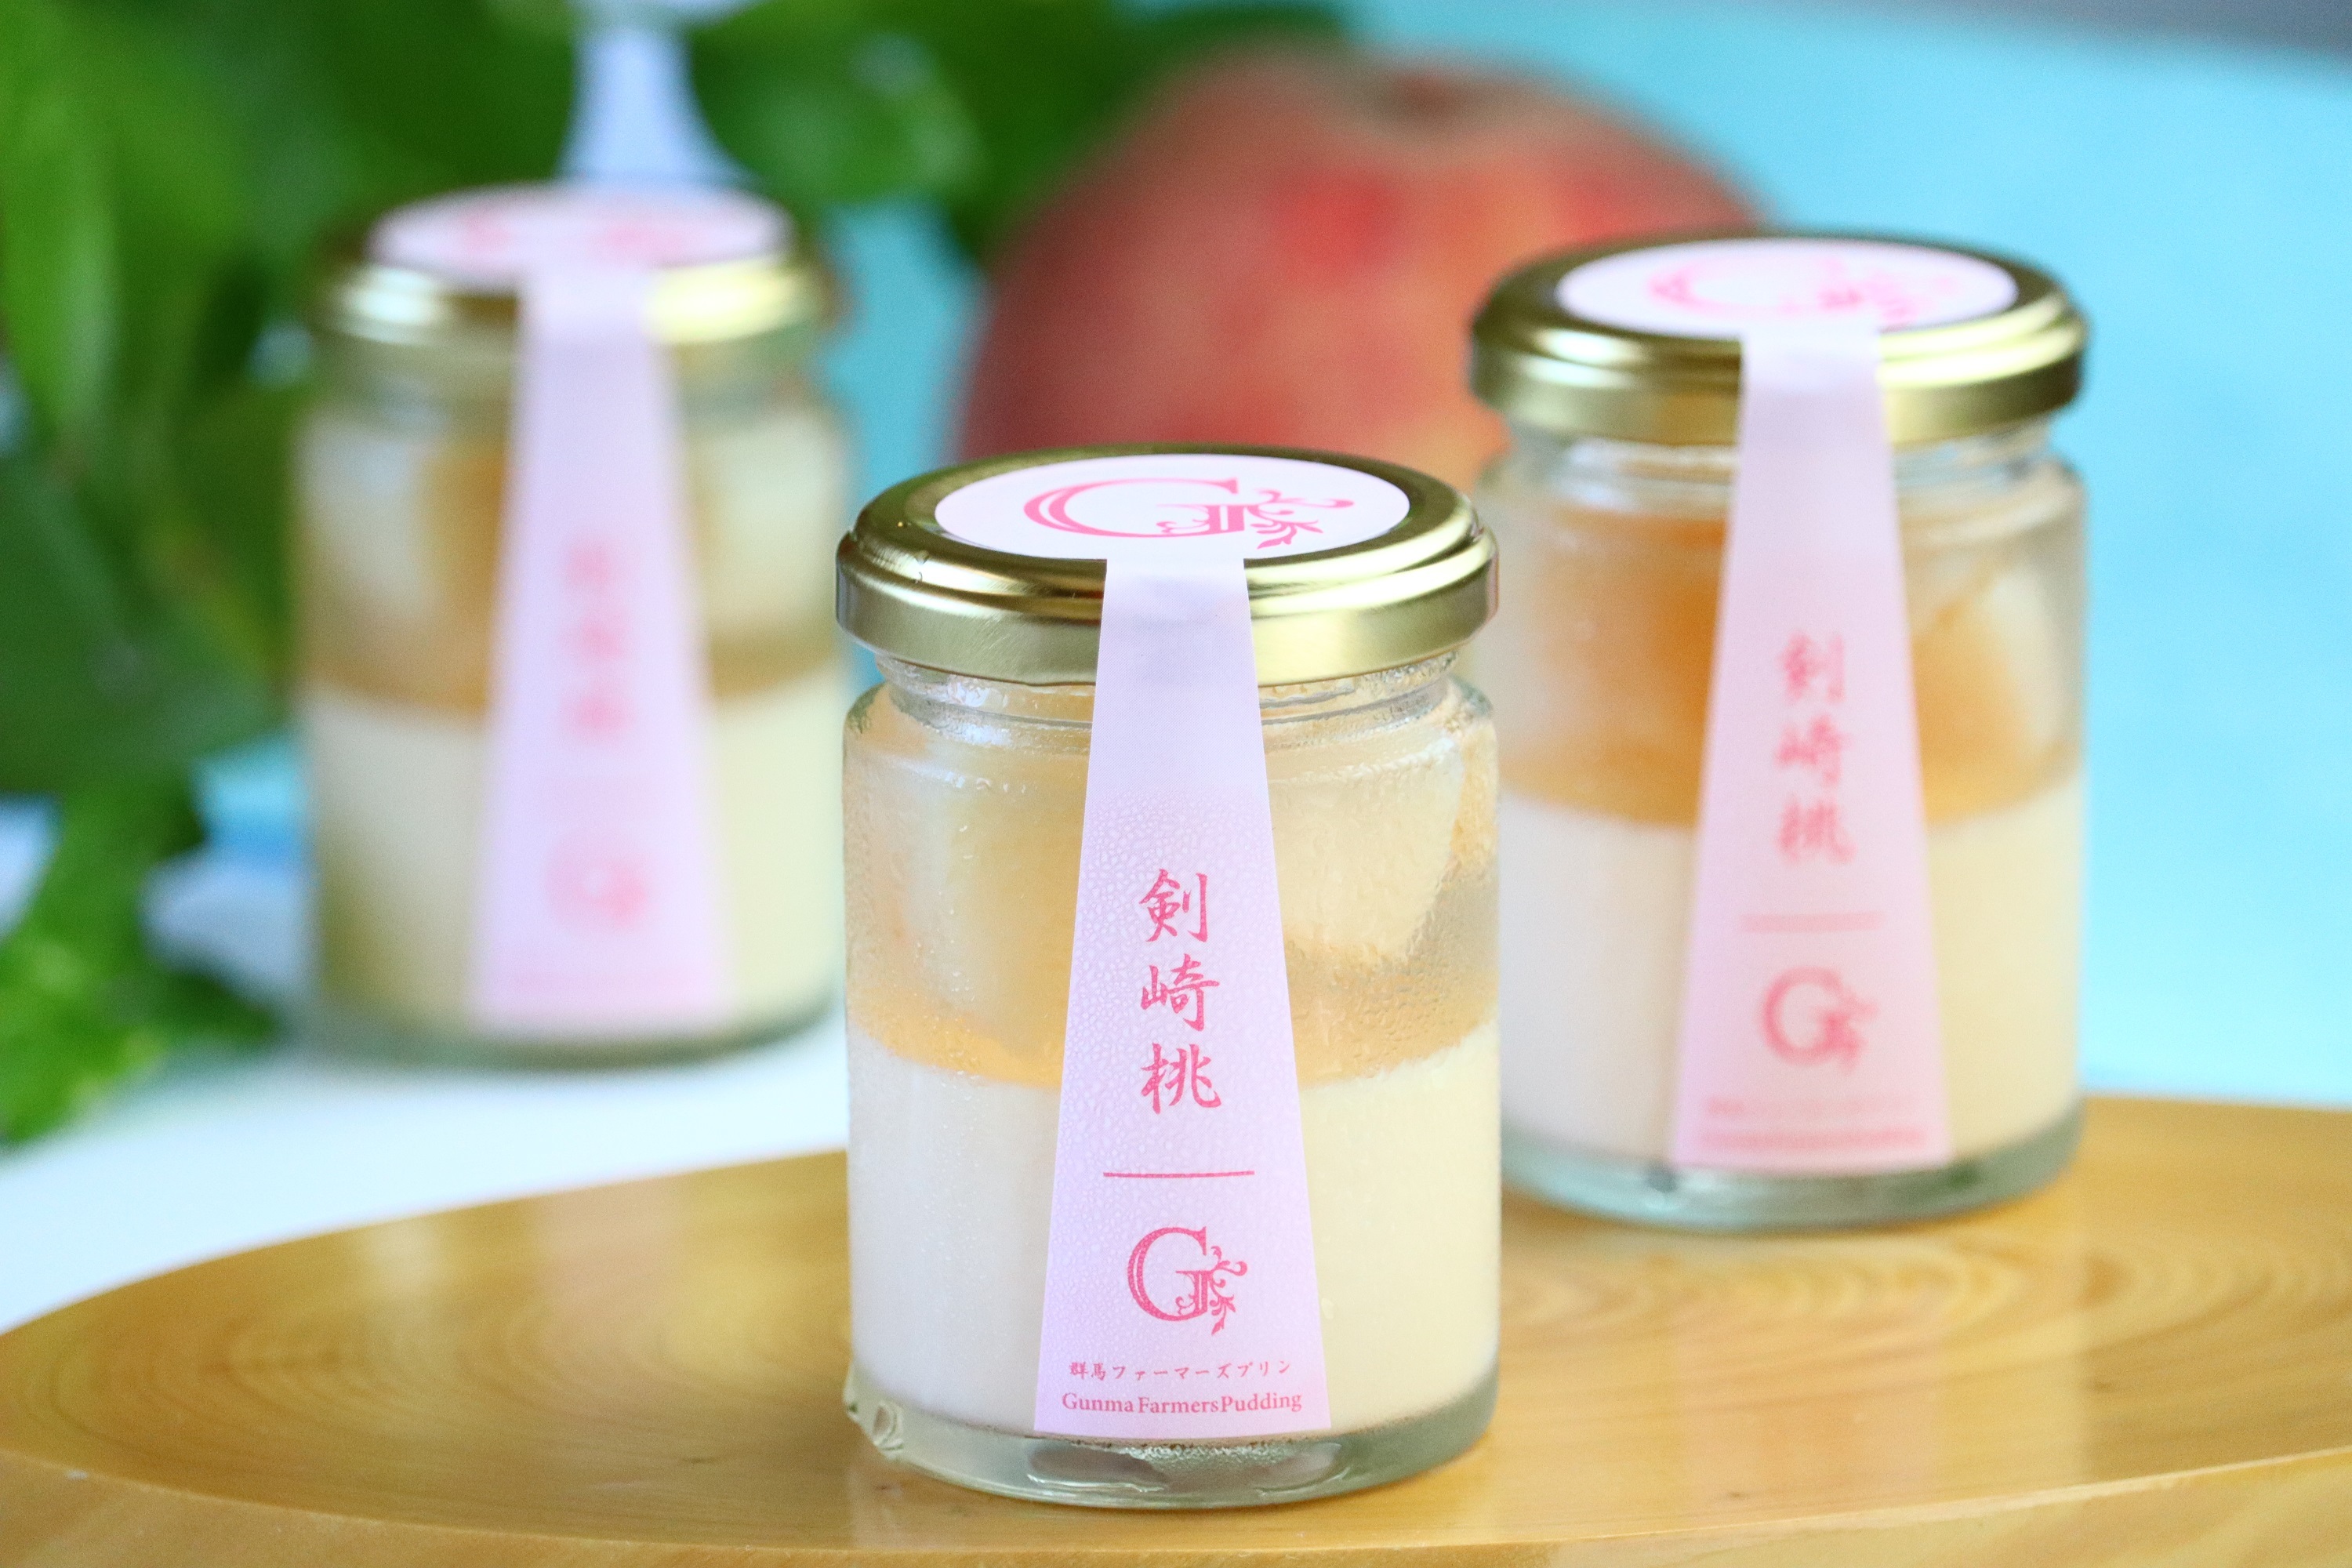 群馬のブランド桃「剣崎桃」を使用したプリンが8月3日(木)から
期間限定で販売！雹の被害を受けた規格外の桃を活用して製造